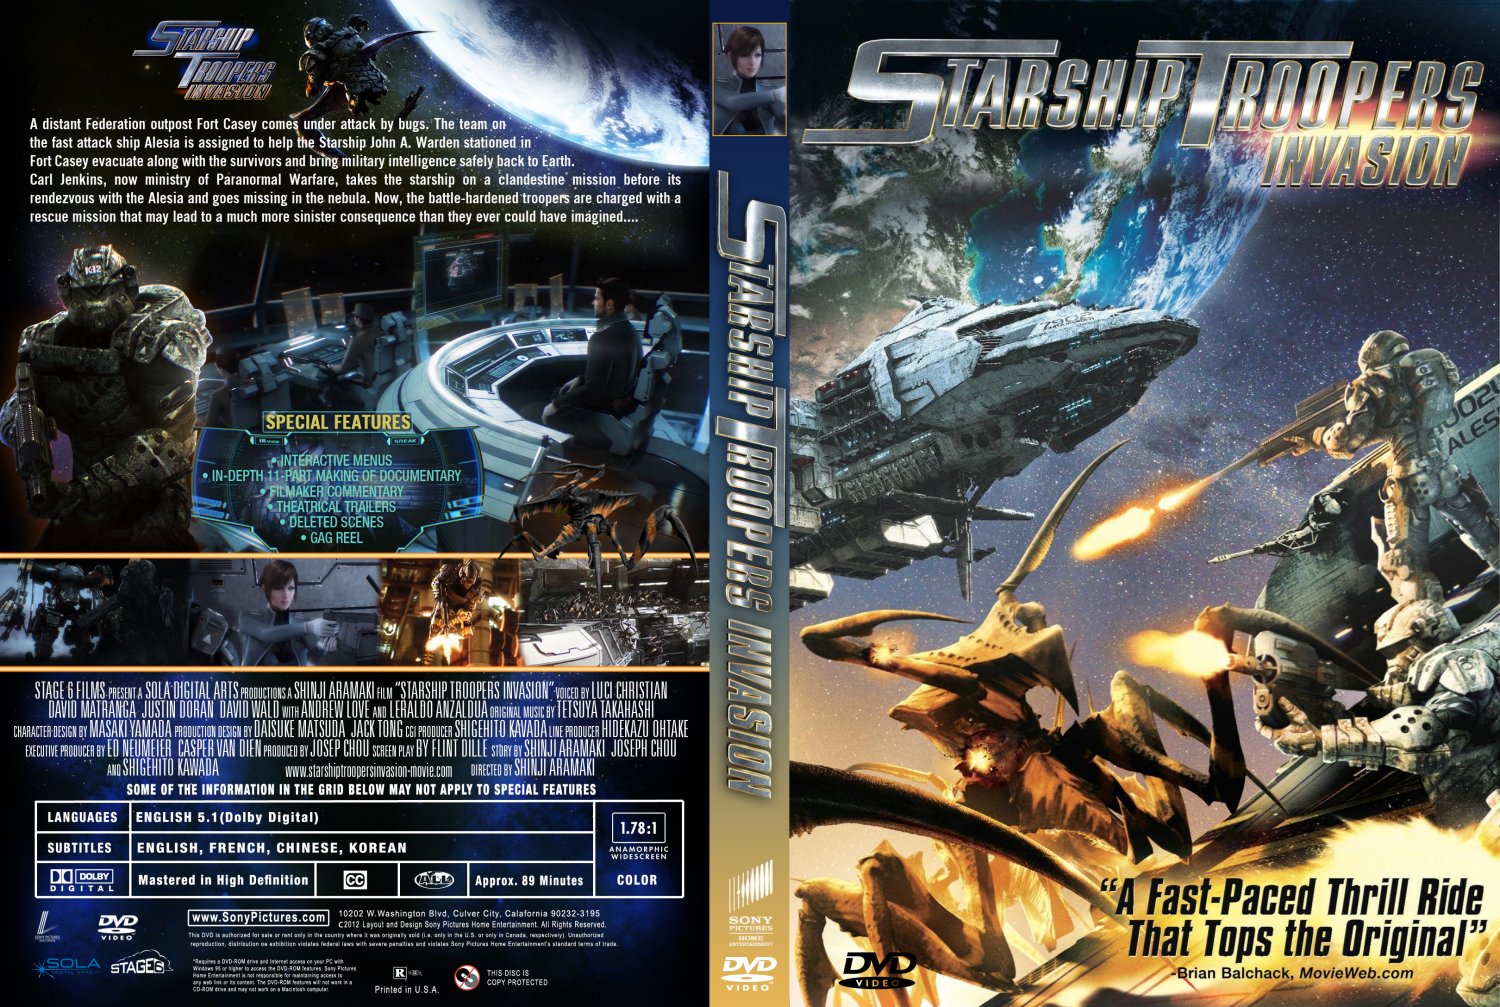  فلم الكرتون الاكشن والخيال العلمي Starship Troopers Invasion 2012 مترجم